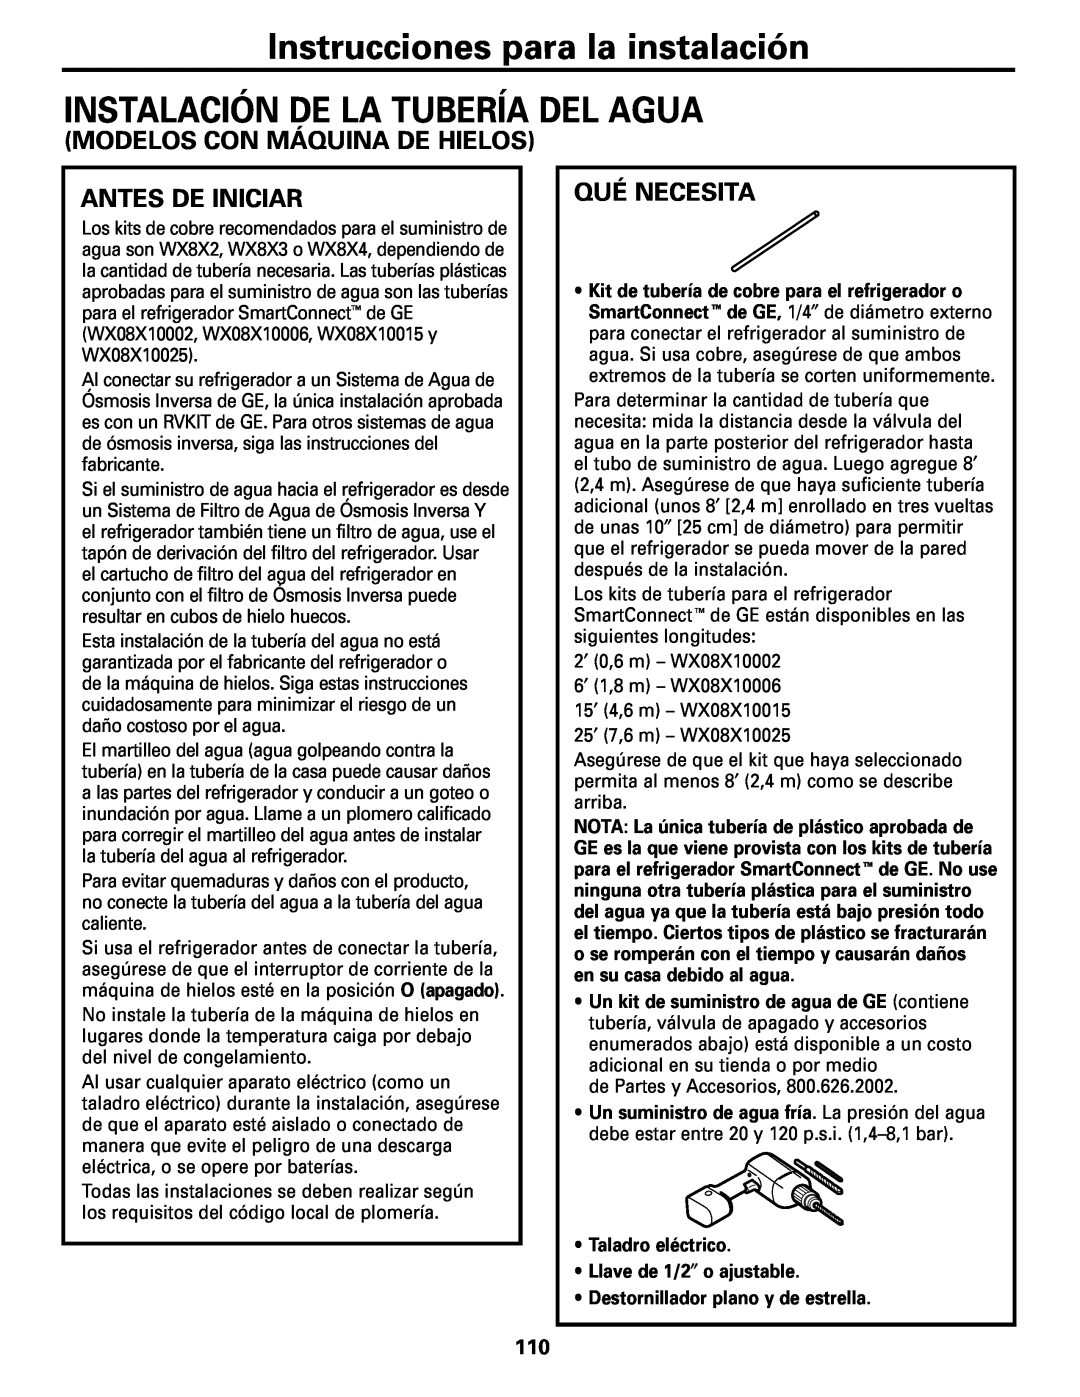 GE Monogram 22, 20 Instrucciones para la instalación INSTALACIÓN DE LA TUBERÍA DEL AGUA, Modelos Con Máquina De Hielos 